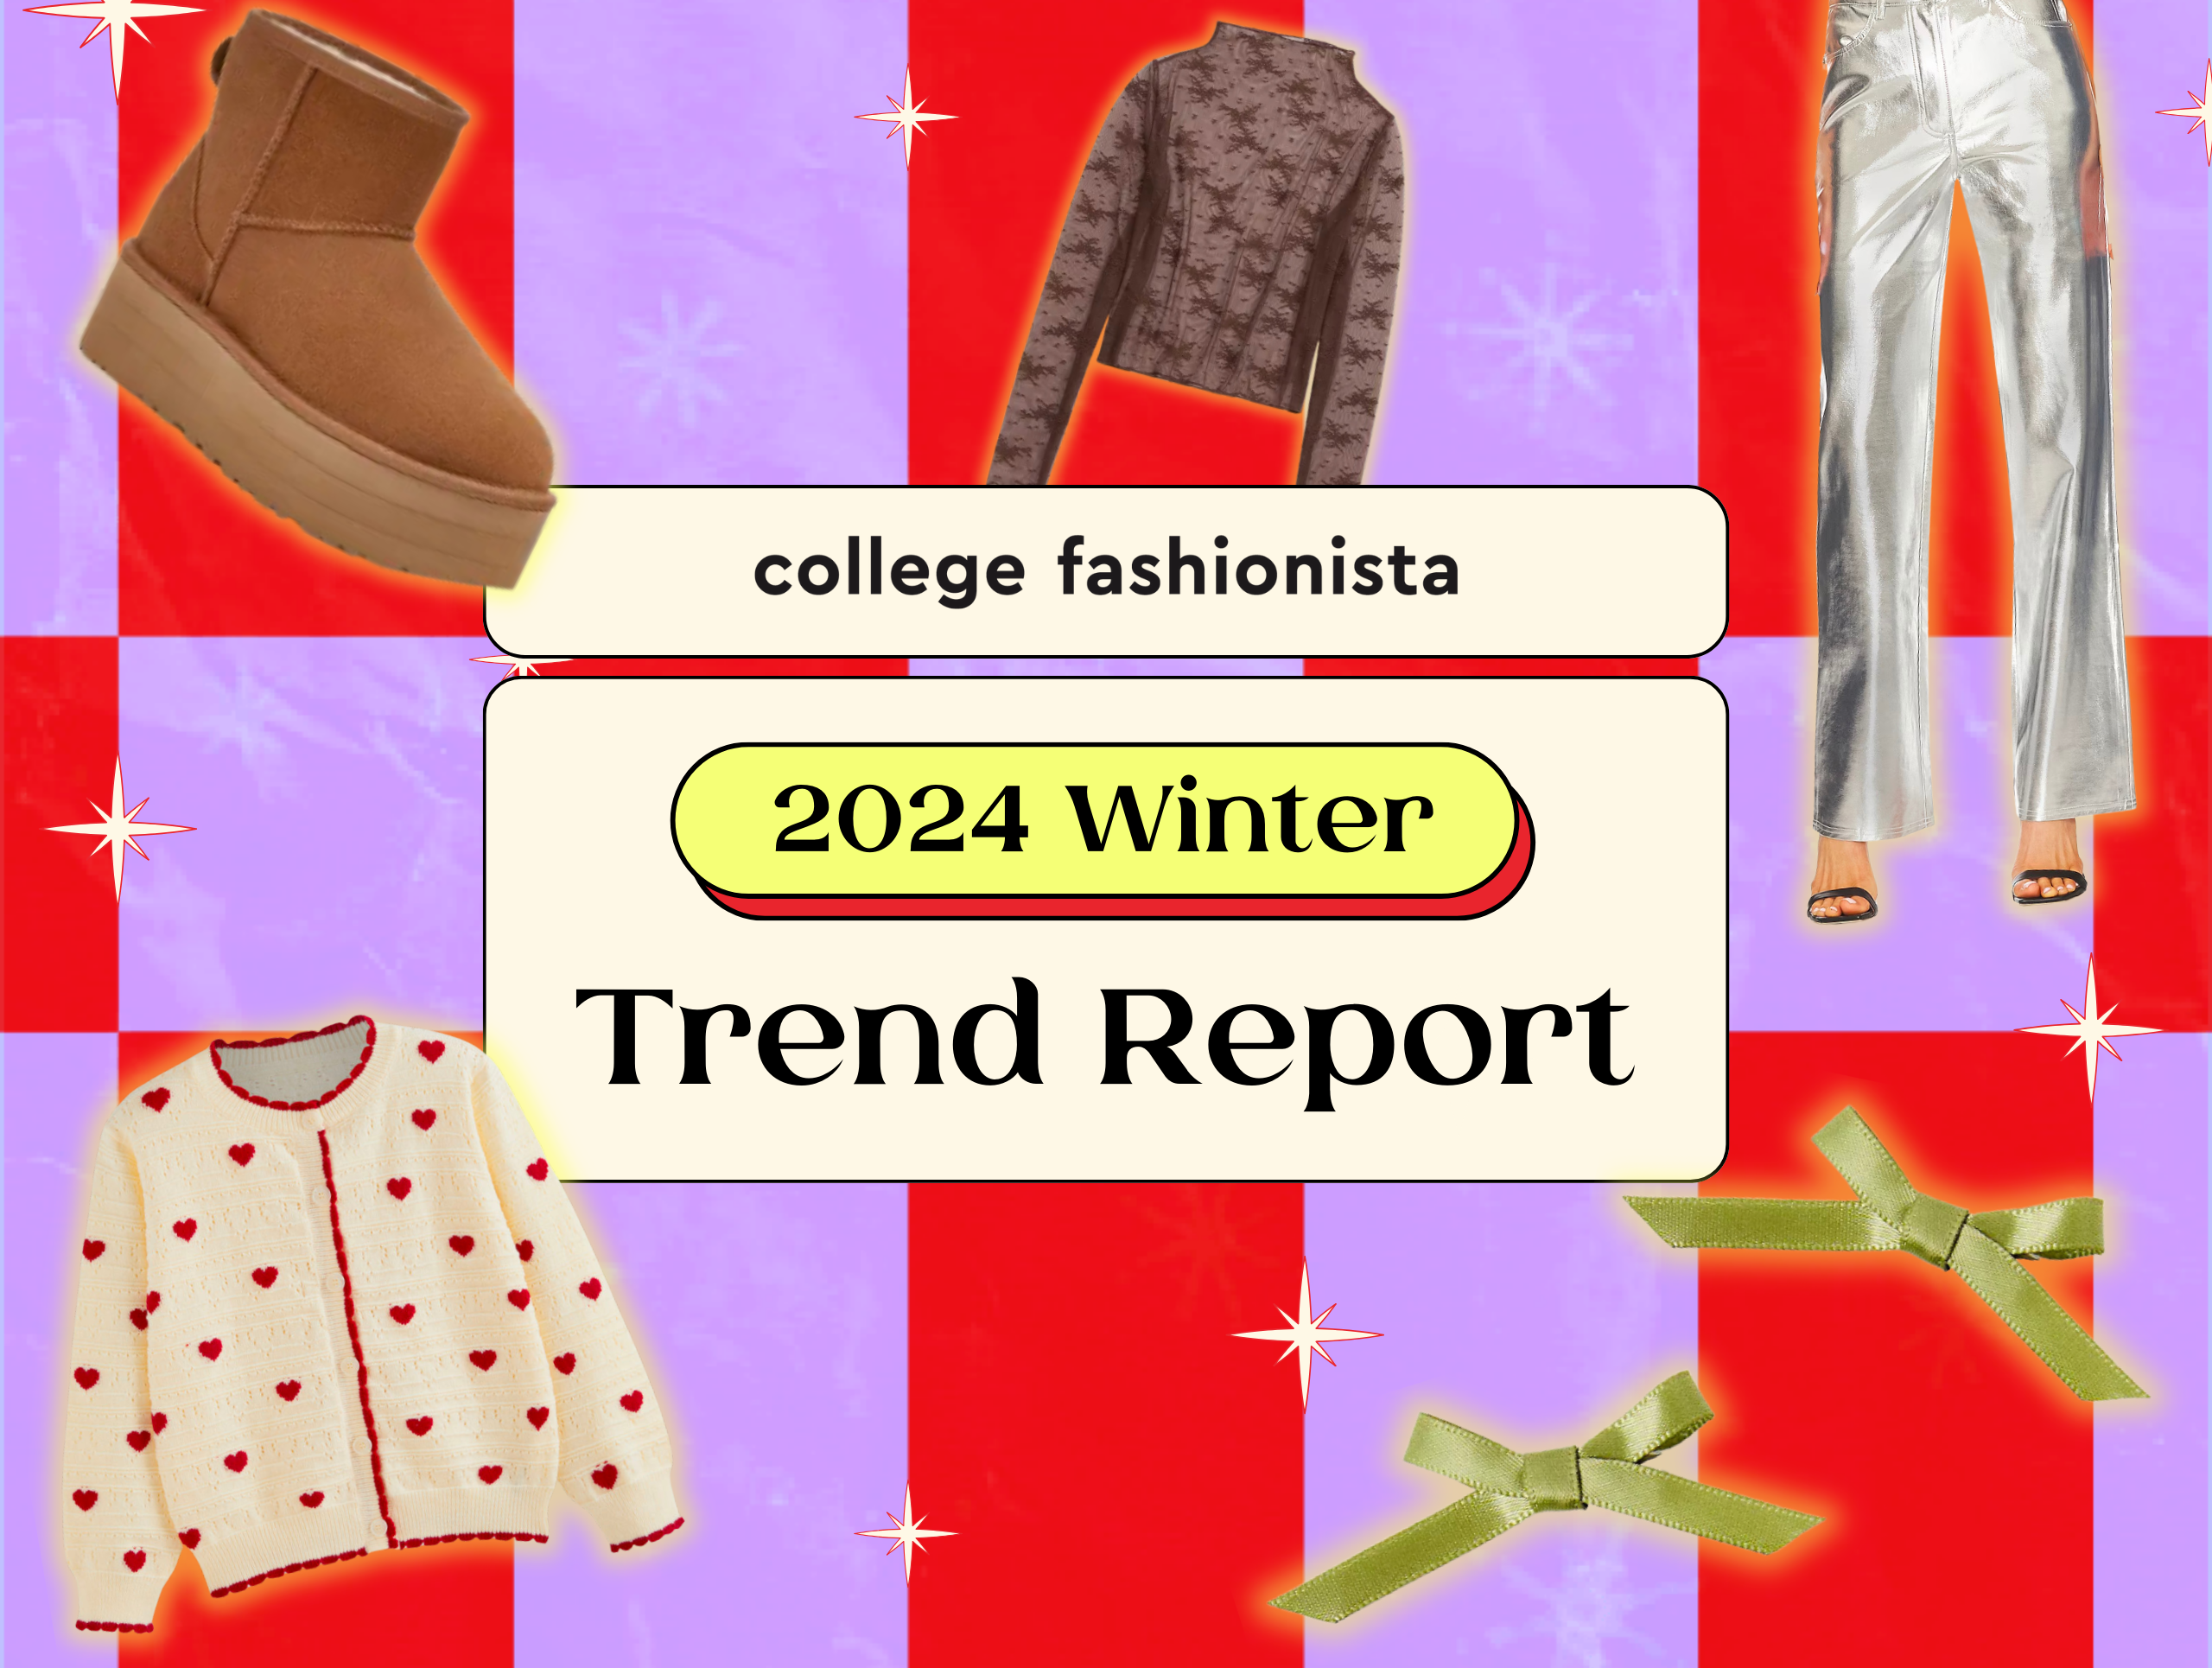 College Fashionista's 2024 Winter Trend Report